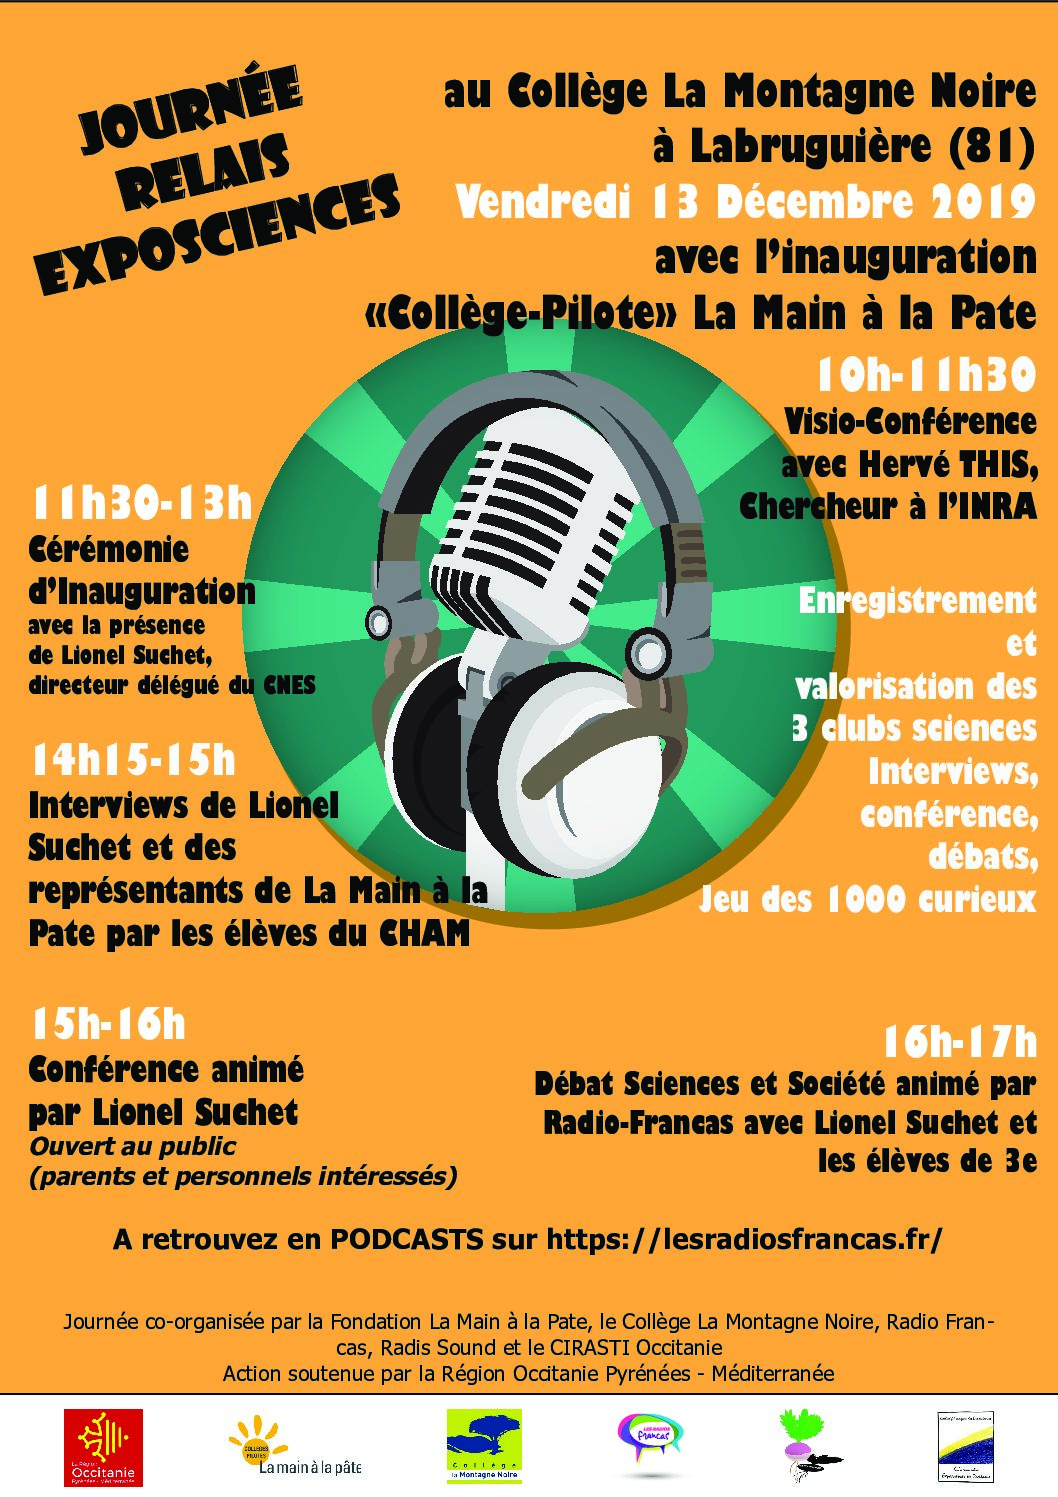 Journée Relais Exposcience et Inauguration Collège-Pilote LAMAP – 13/12/19 à Labruguière (81)